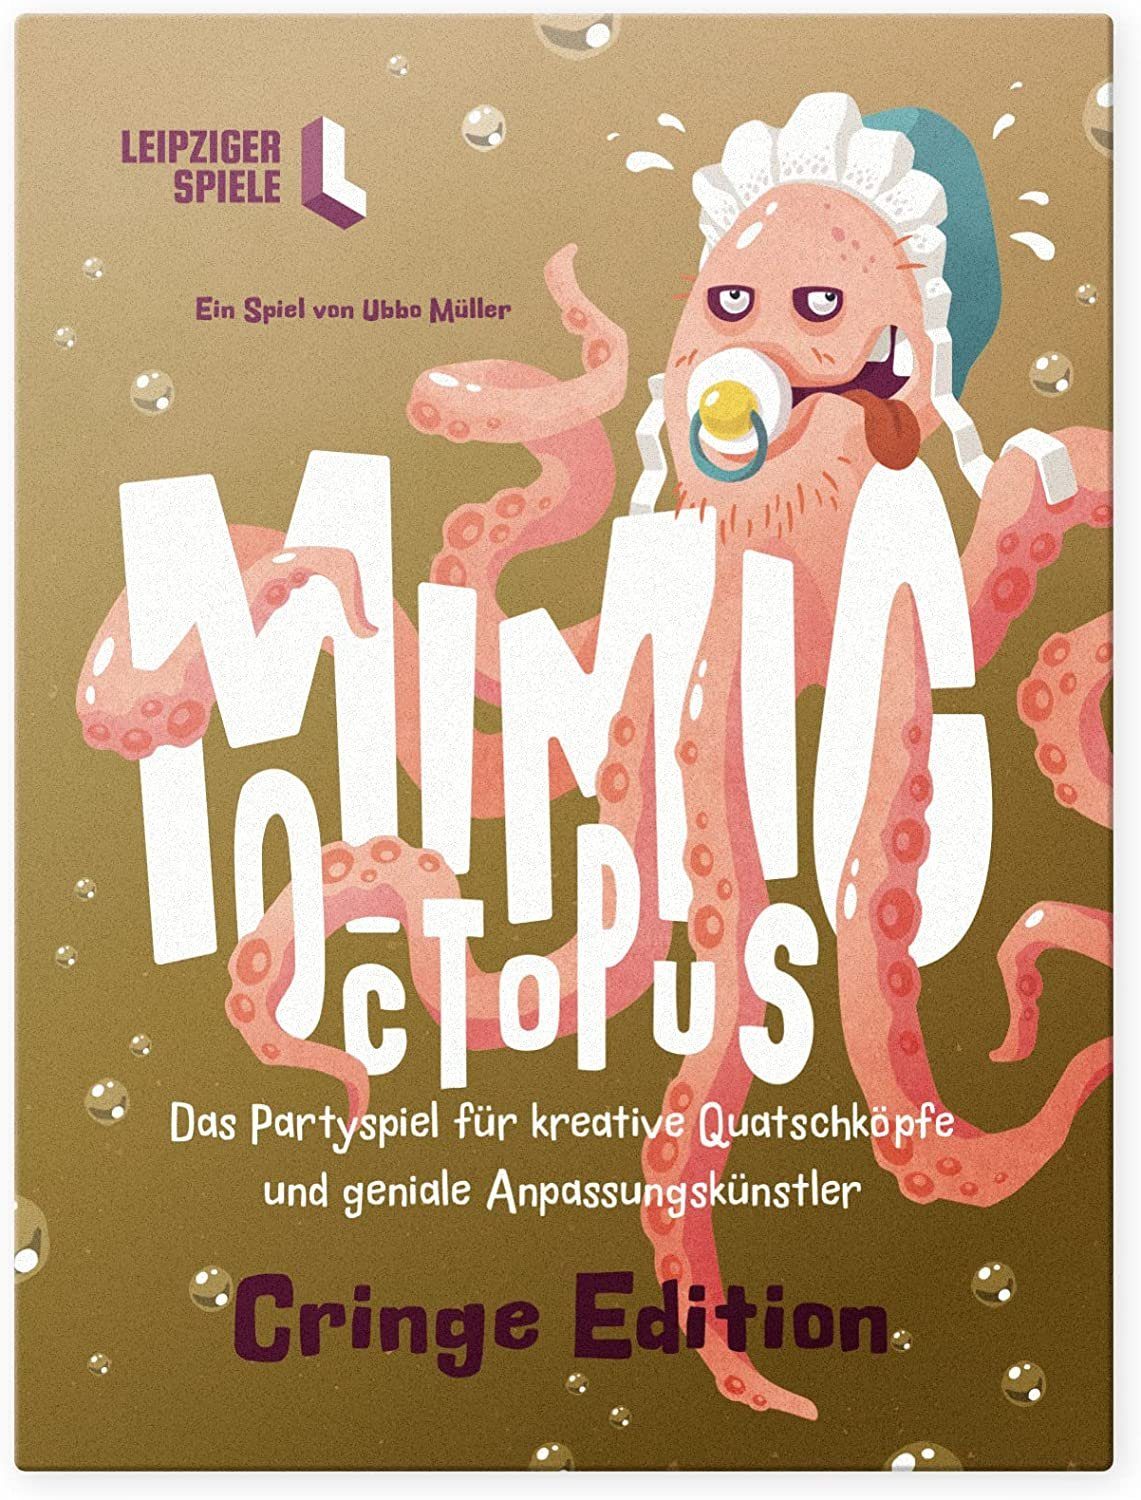 Leipziger Spiele Spiel, Mimic Octopus – Das kommunikative Partyspiel für Erwachsene und Jugendliche (Cringe Edition)